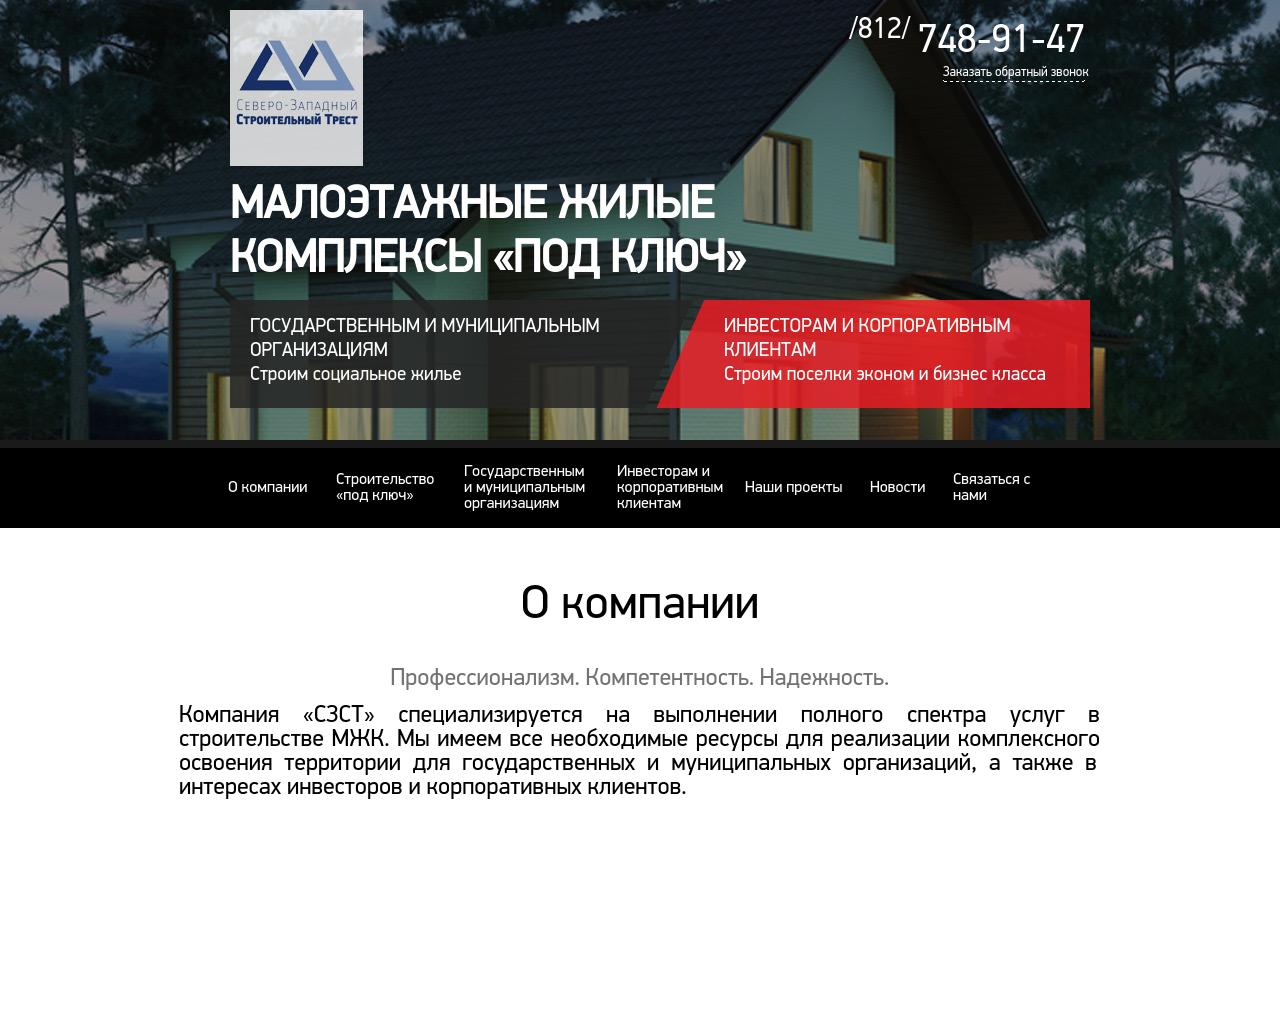 Изображение сайта szst.ru в разрешении 1280x1024